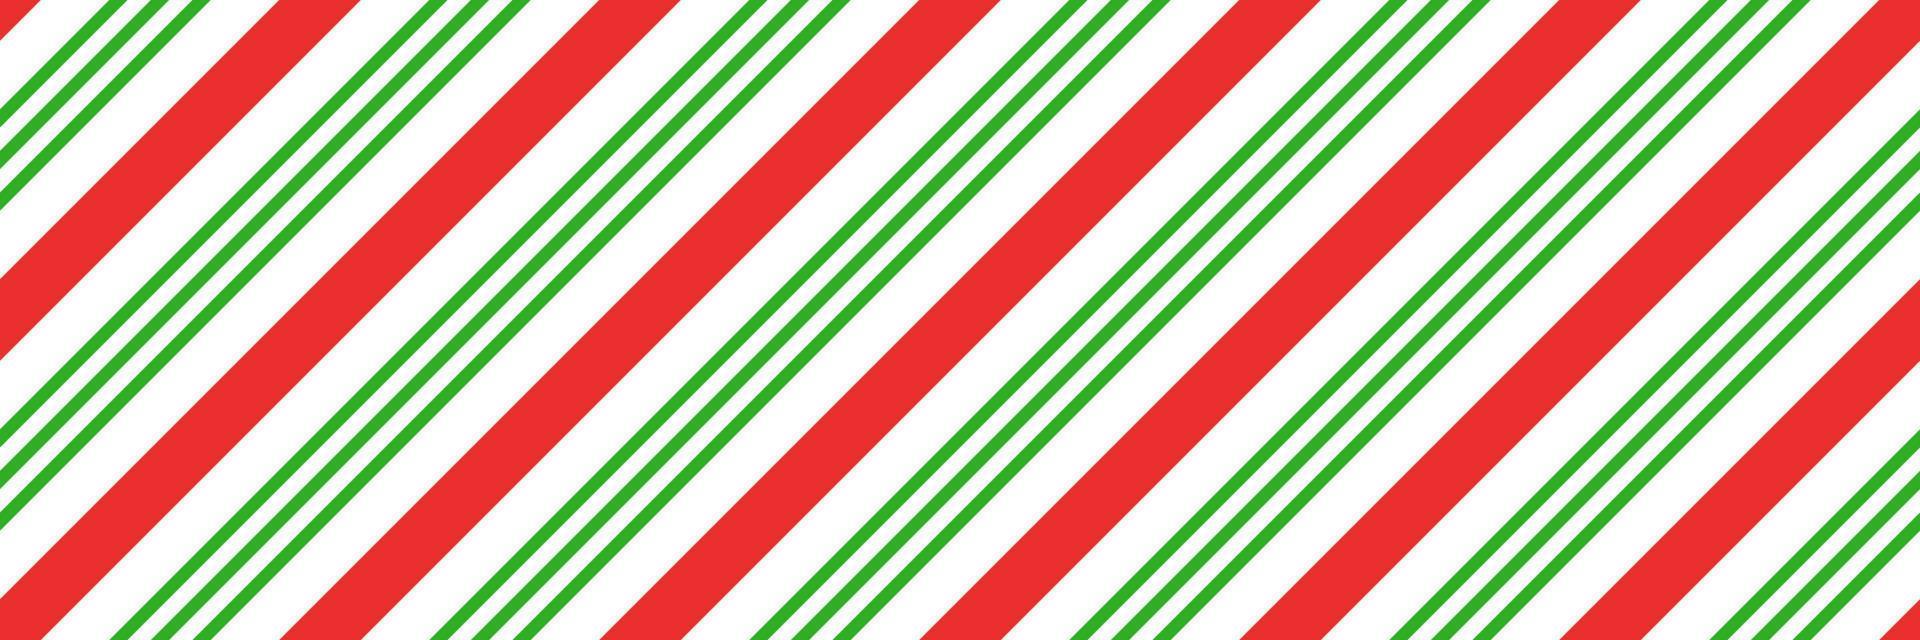 bastón de caramelo de navidad a rayas de patrones sin fisuras. fondo de bastón de caramelo de navidad con rayas rojas y verdes. estampado diagonal de caramelo de menta. textura de envoltura tradicional de navidad. ilustración vectorial vector